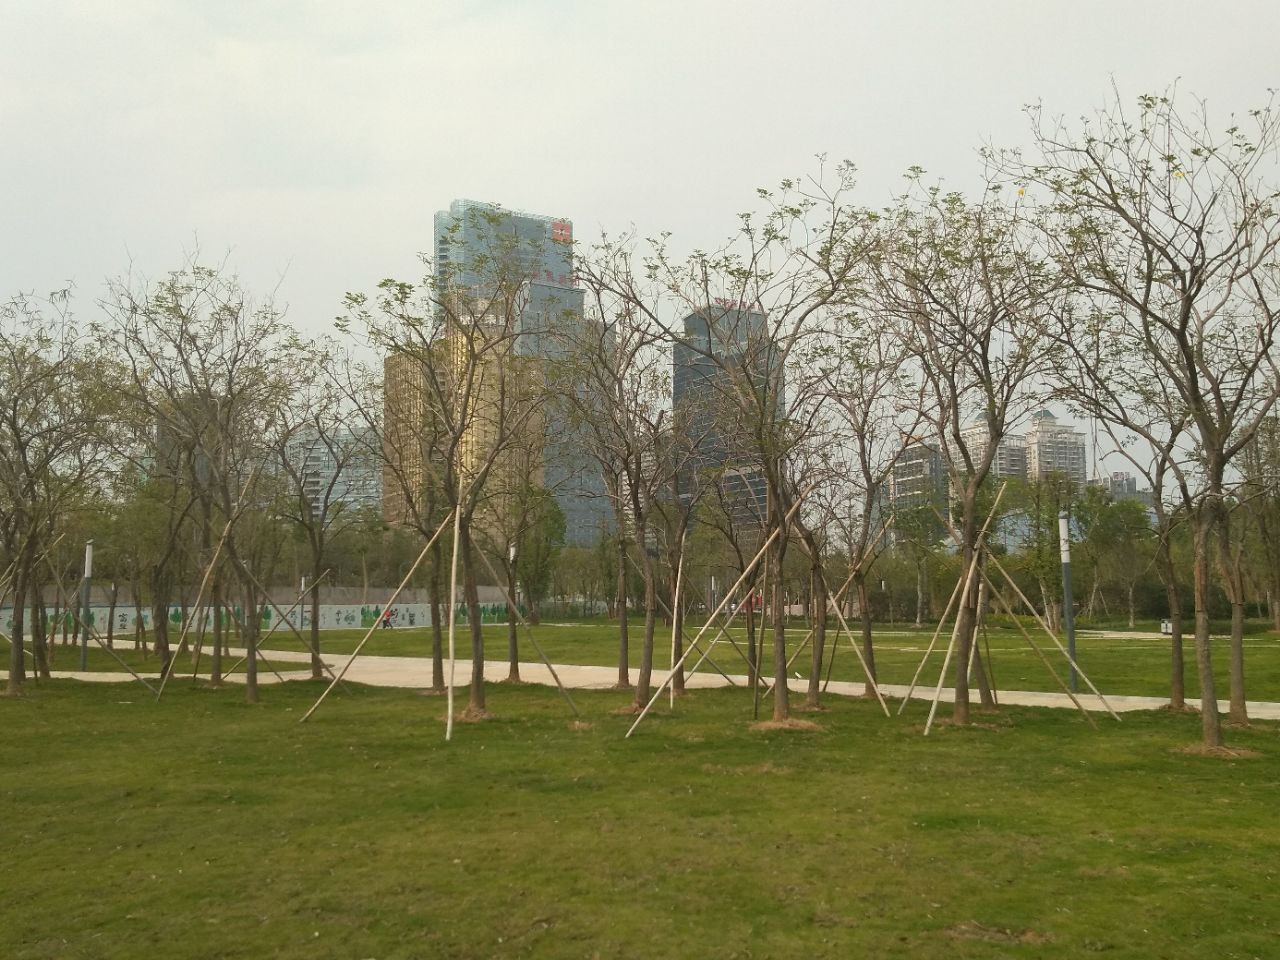 惠州市民乐园图片